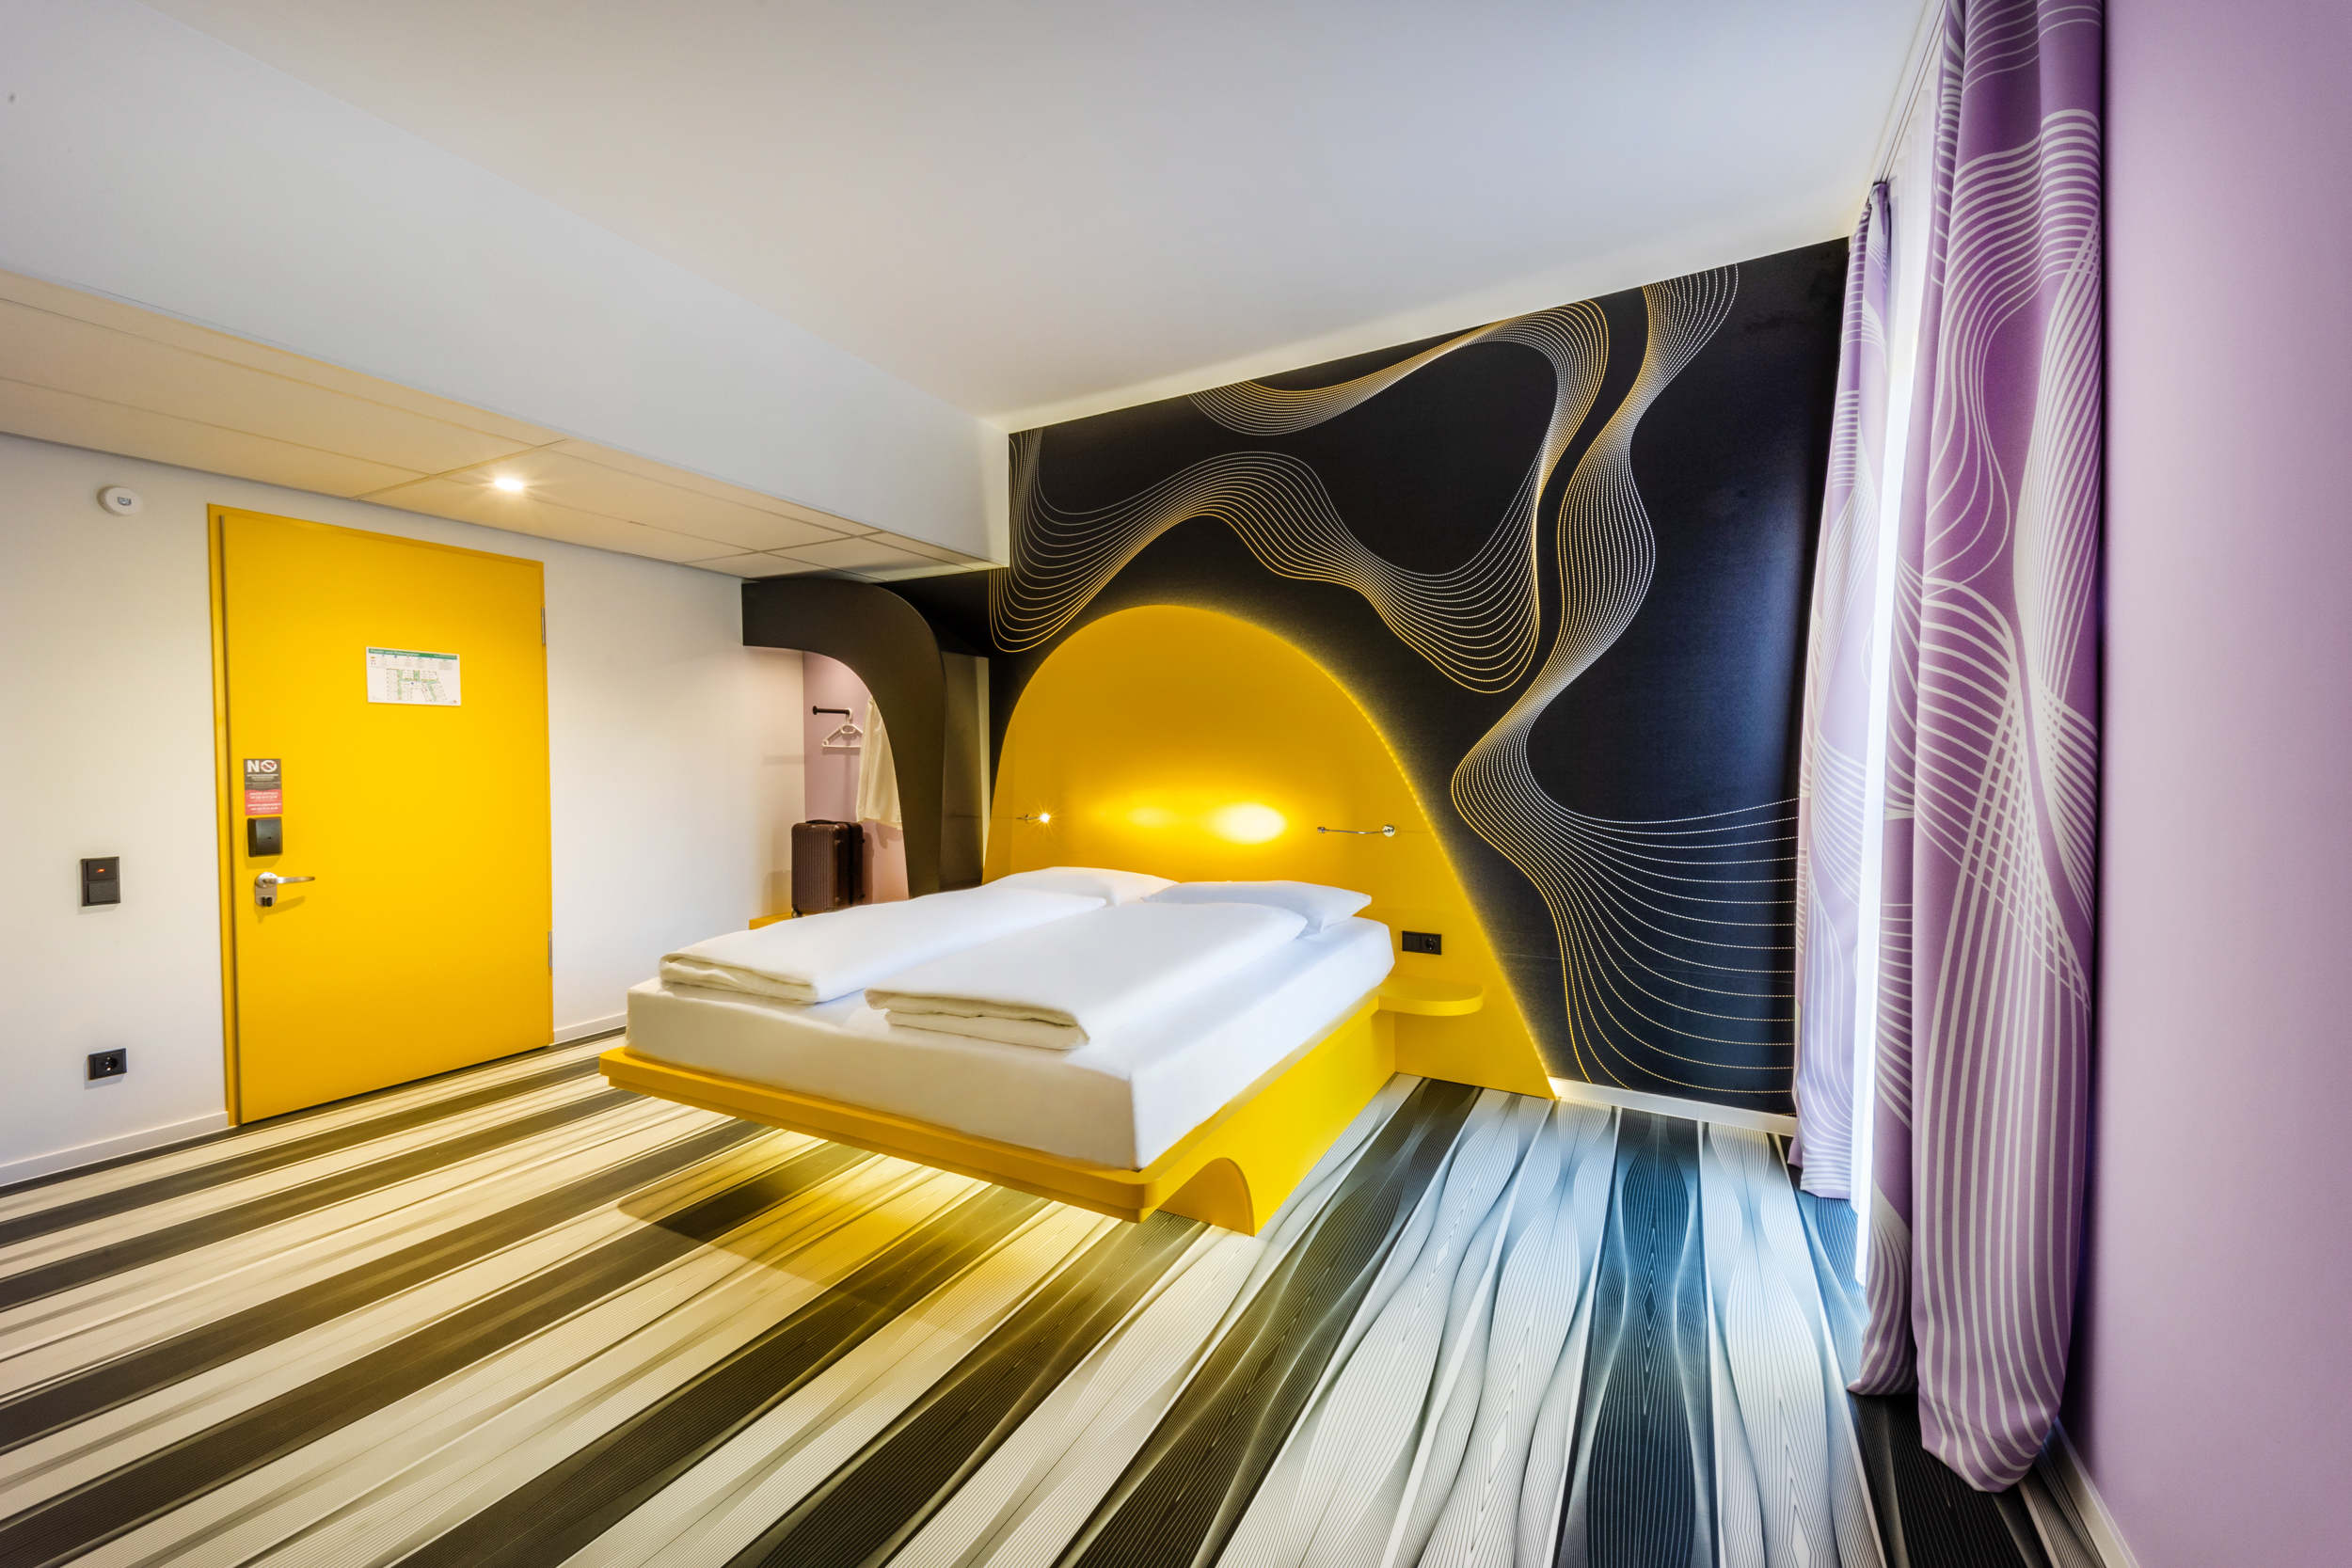 Einblick in ein modernes Hotelzimmer mit gelbem Bett und lila Vorhängen